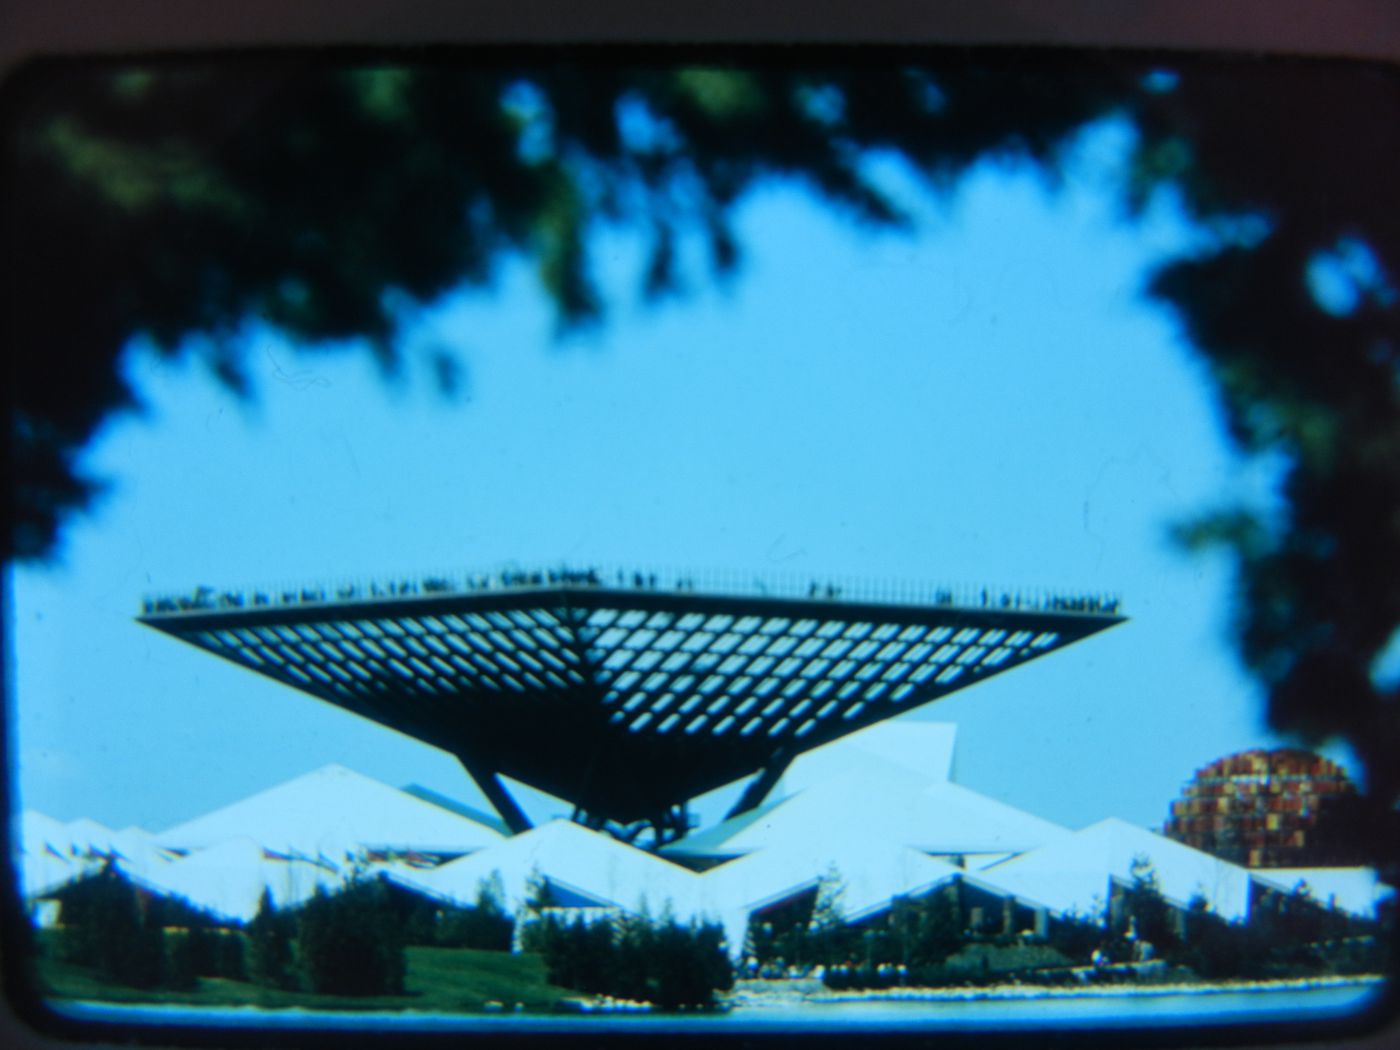 View of the Canada's Pavilion, Expo 67, Montréal, Québec